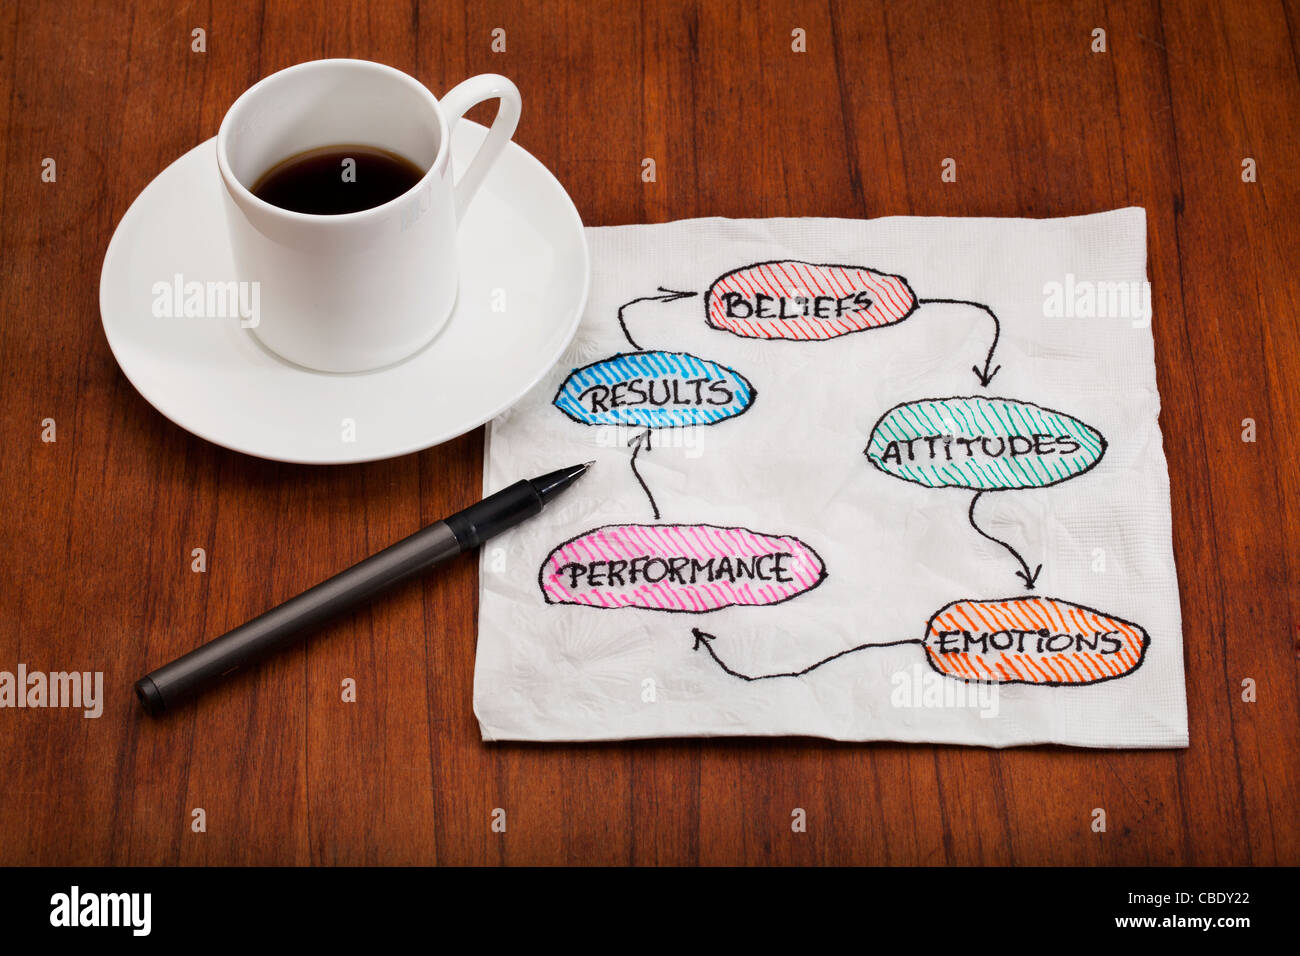 Conviction, l'attitude, l'émotion, de performance, de résultat, de la rétroaction du cycle - concept présenté comme une serviette tasse à café expresso avec doodle Banque D'Images